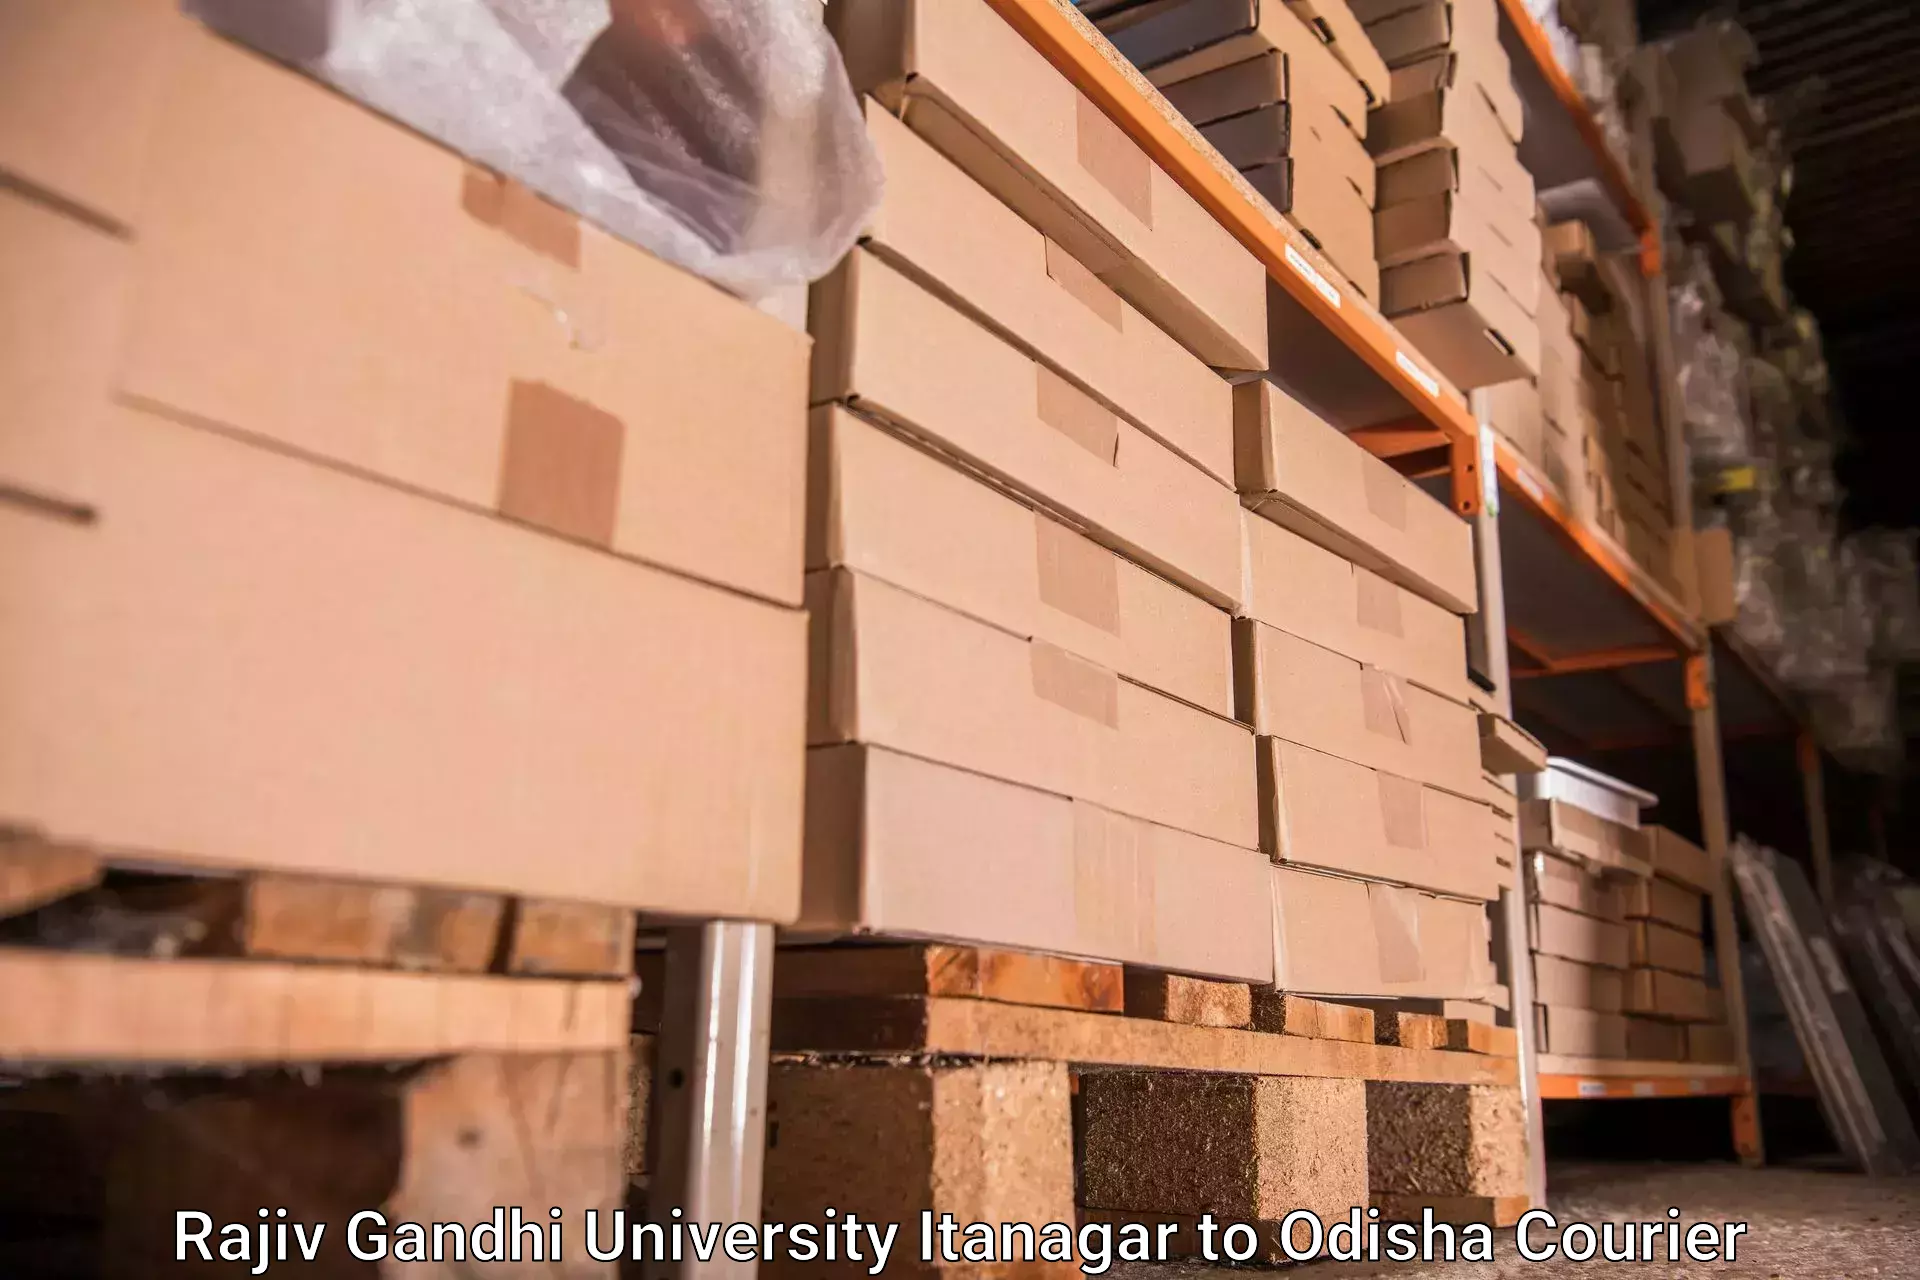 Baggage transport technology Rajiv Gandhi University Itanagar to Nabarangpur